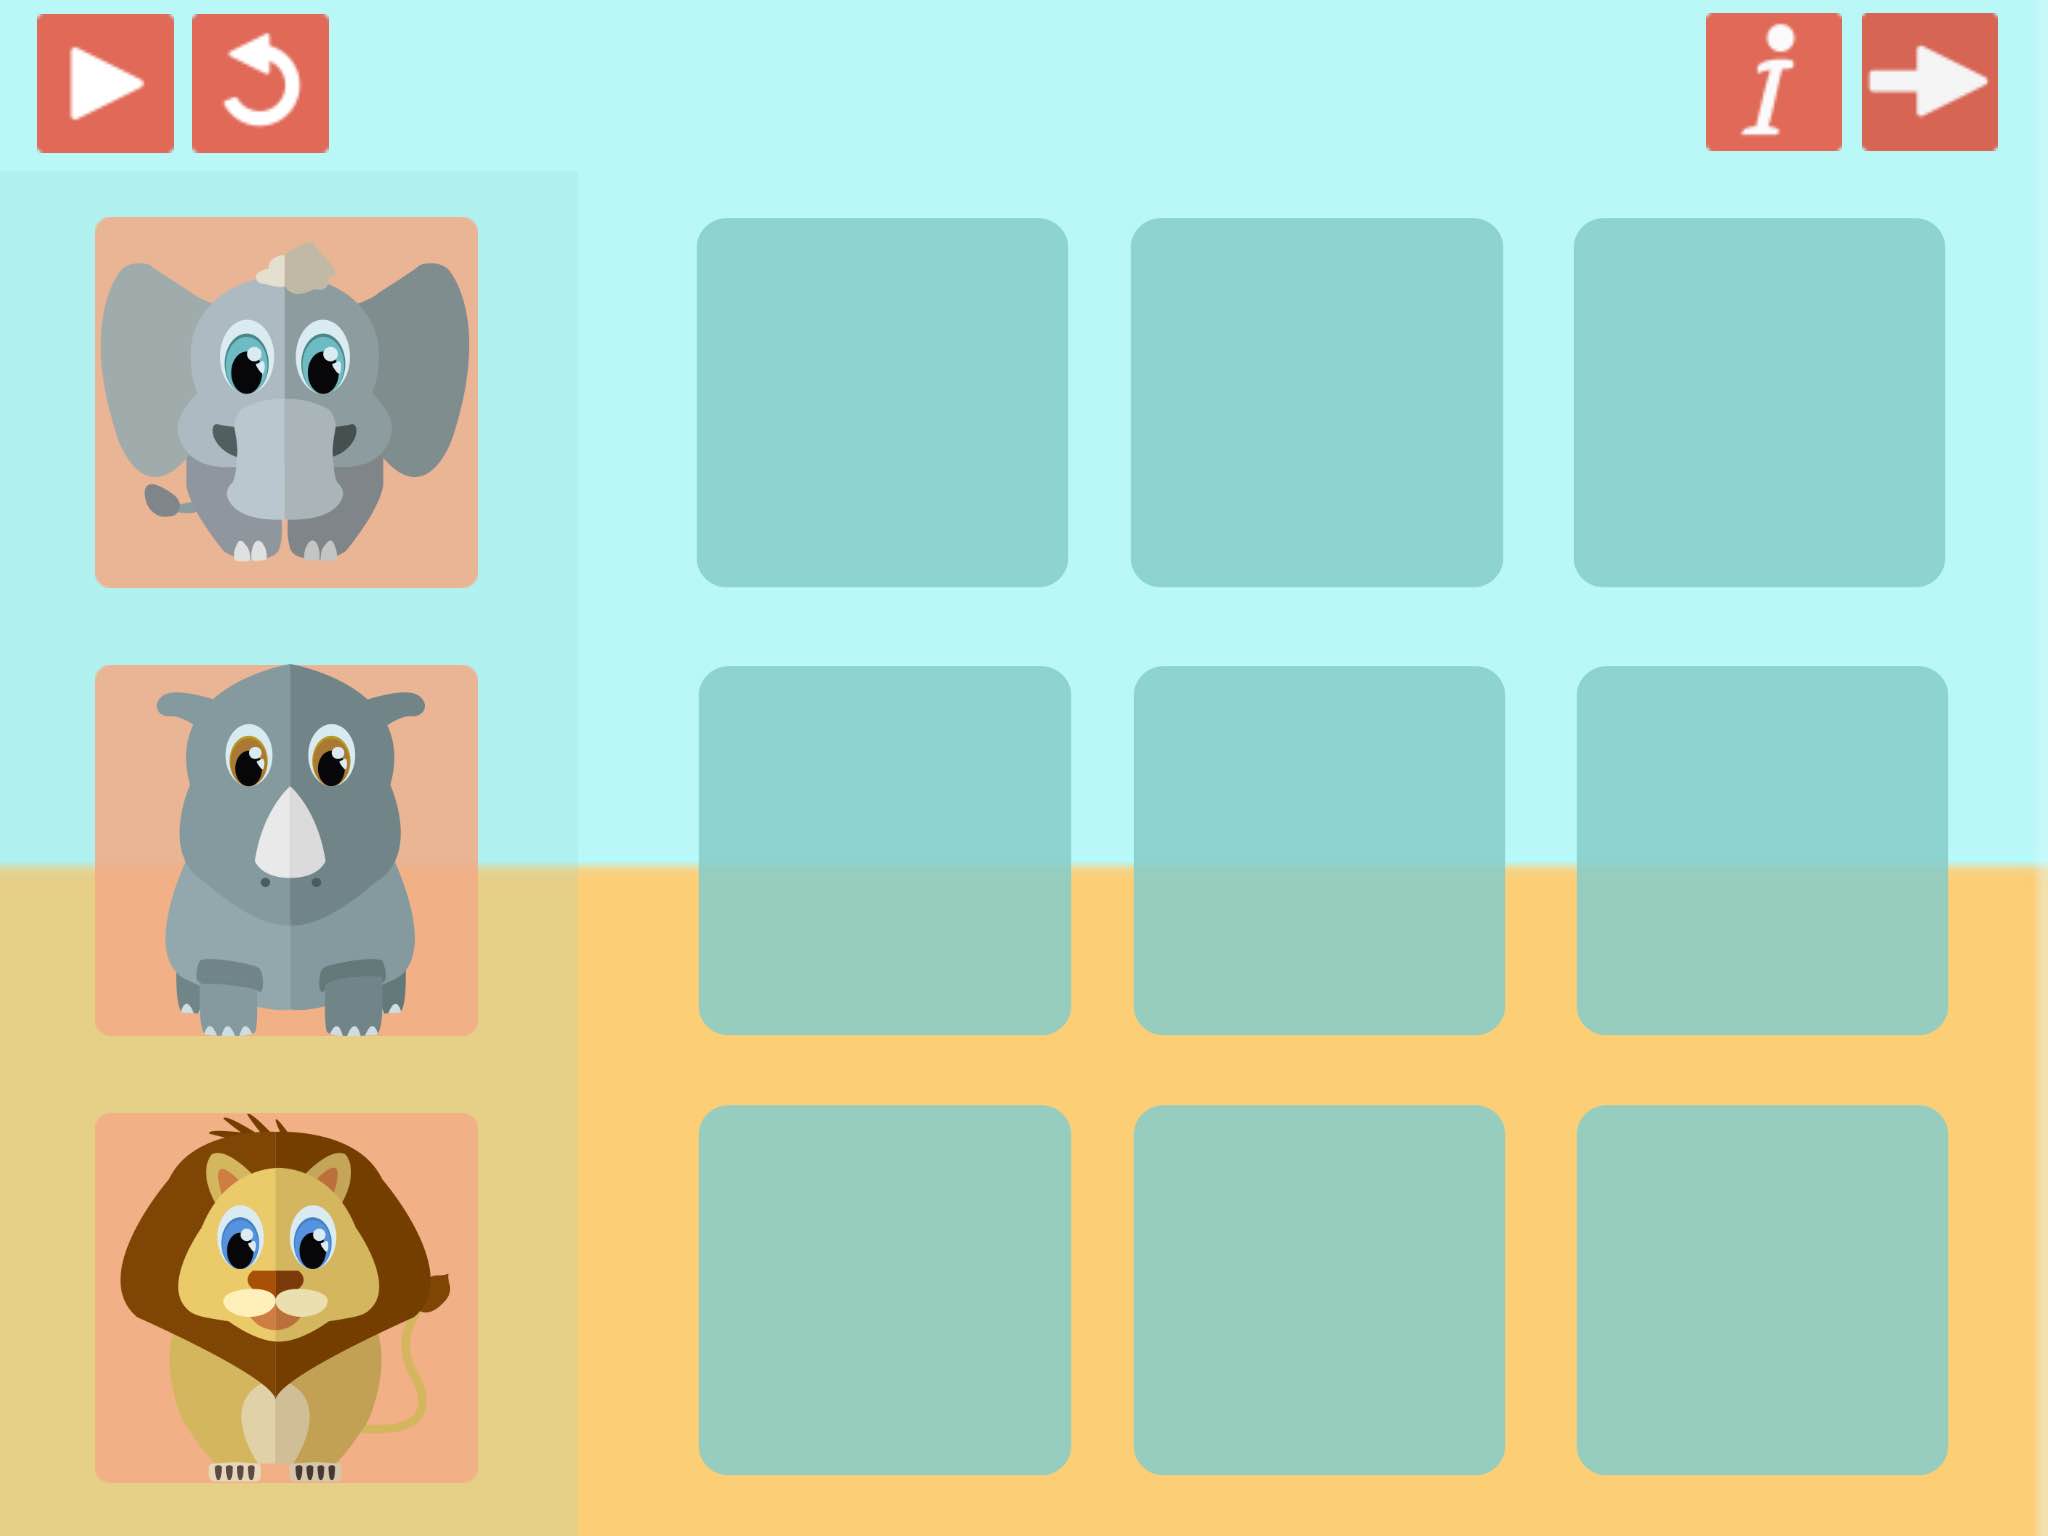 Een voorbeeld uit het spel: Waar zet je de dieren neer als de opdracht is: "Zet de olifant naast de neushoorn naast de leeuw"? En doet je iets anders als de opdracht is: "Zet de olifant naast de neushoorn en naast de leeuw"?